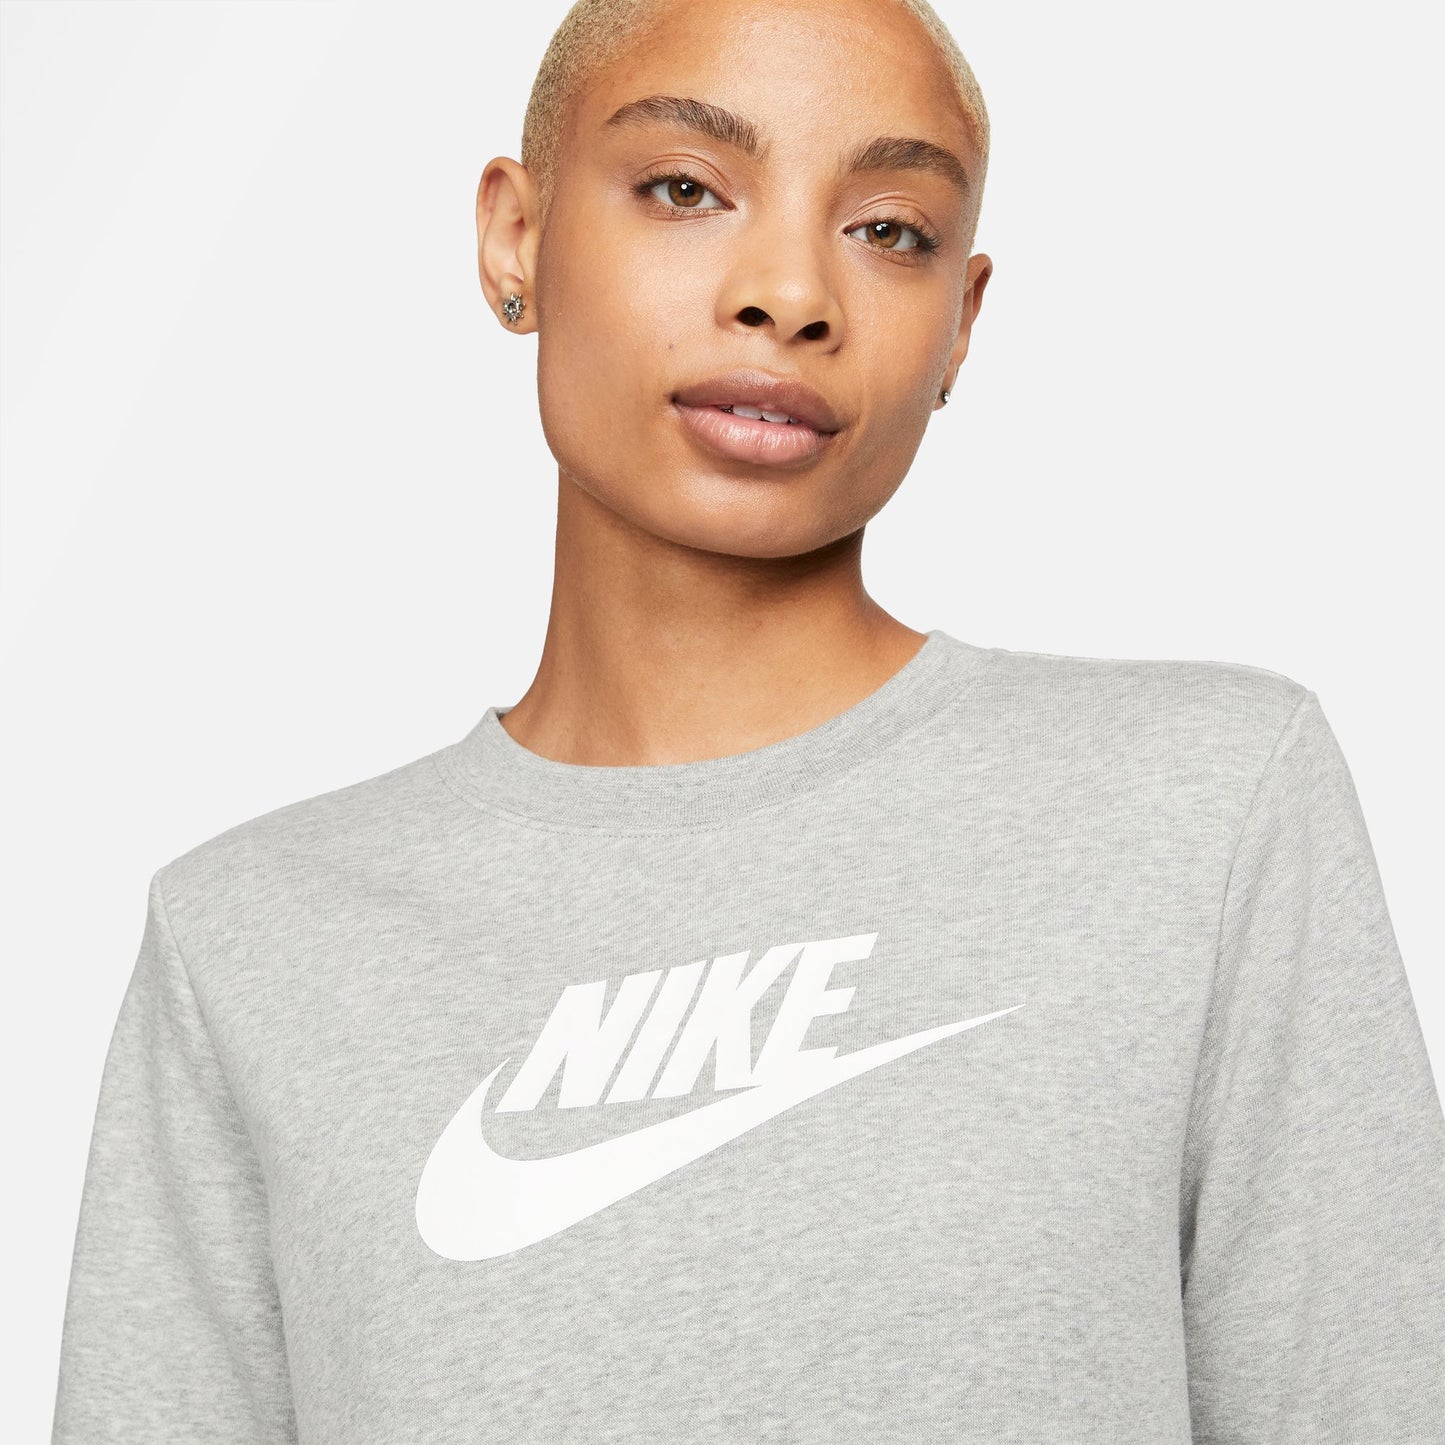 Nike Sportswear grijze clubfleece 